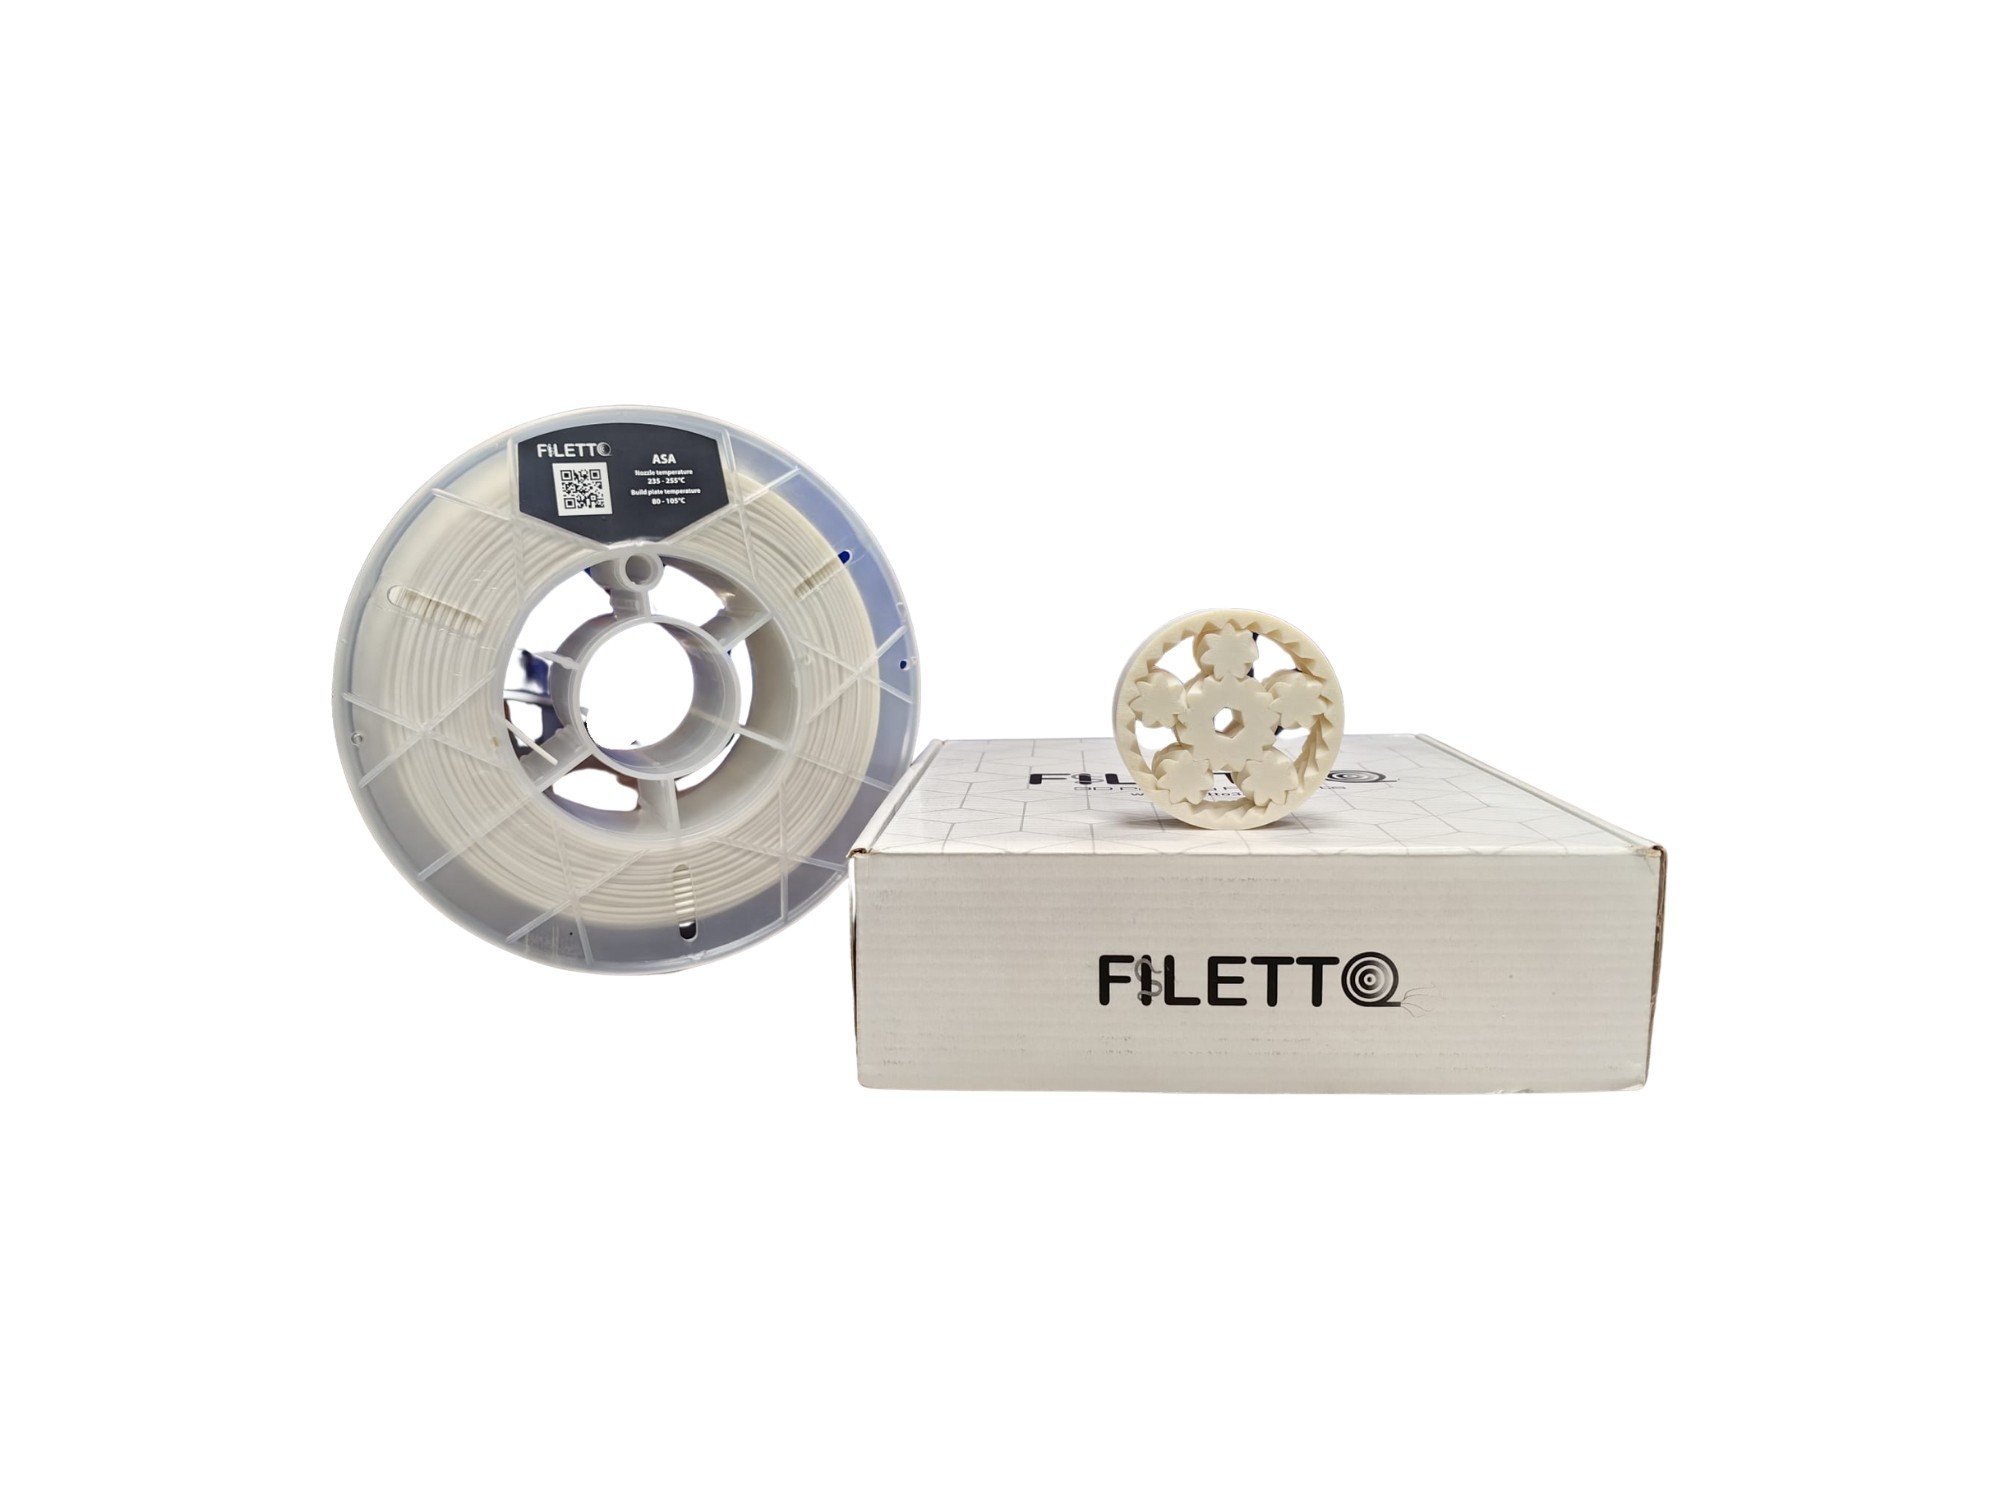 Filetto 1.75 mm ASA Filament - White